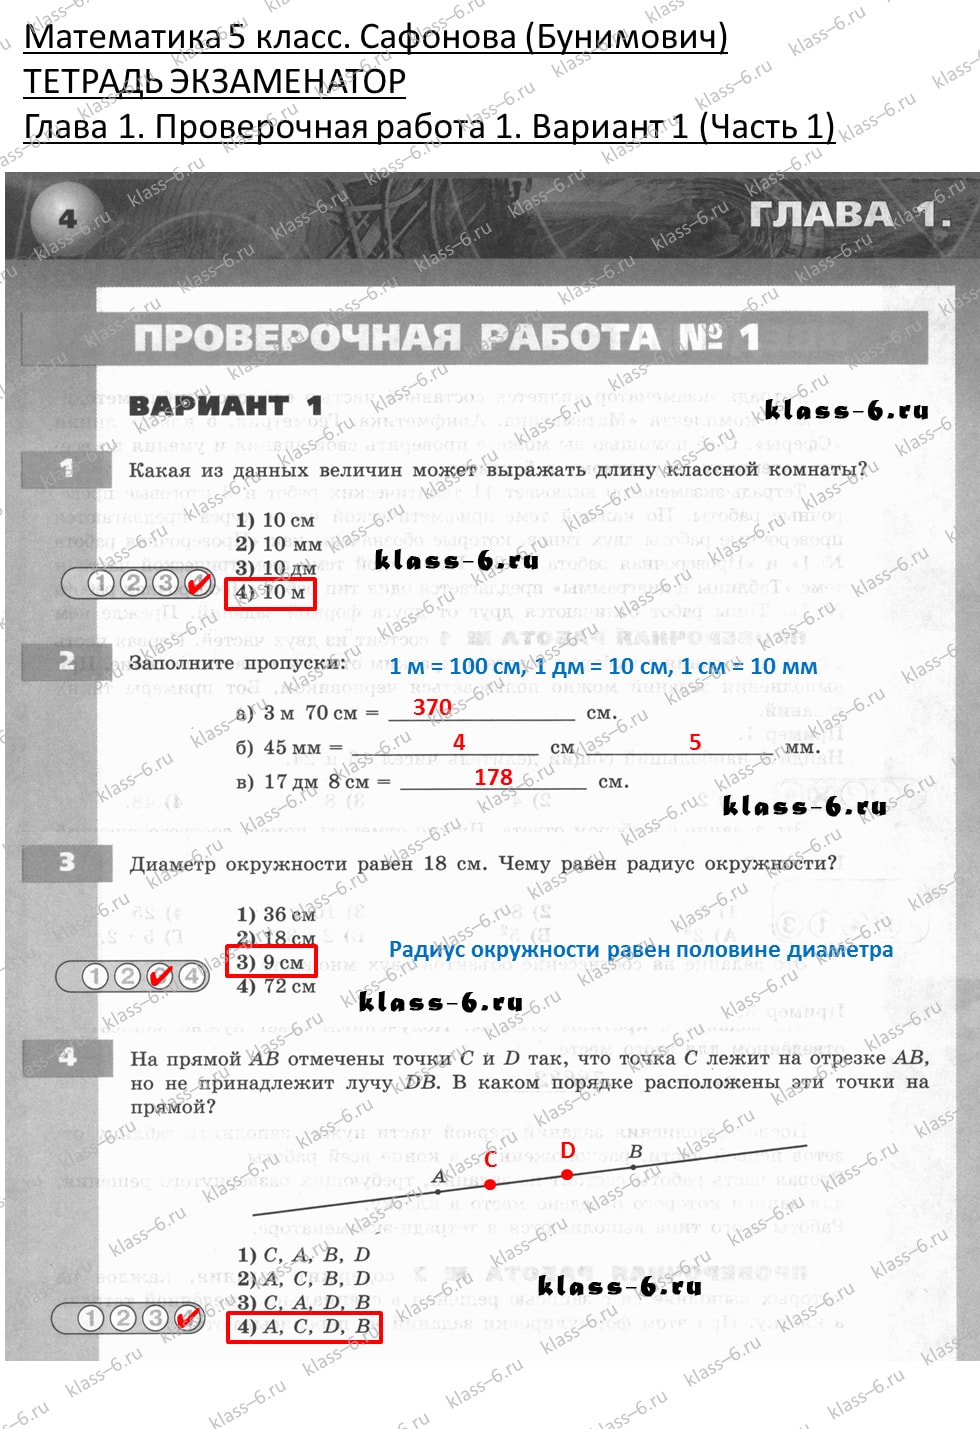 решебник и гдз по математике тетрадь экзаменатор Сафонова, Бунимович 5 класс глава 1 контрольная работа 1 вариант 1 (1)